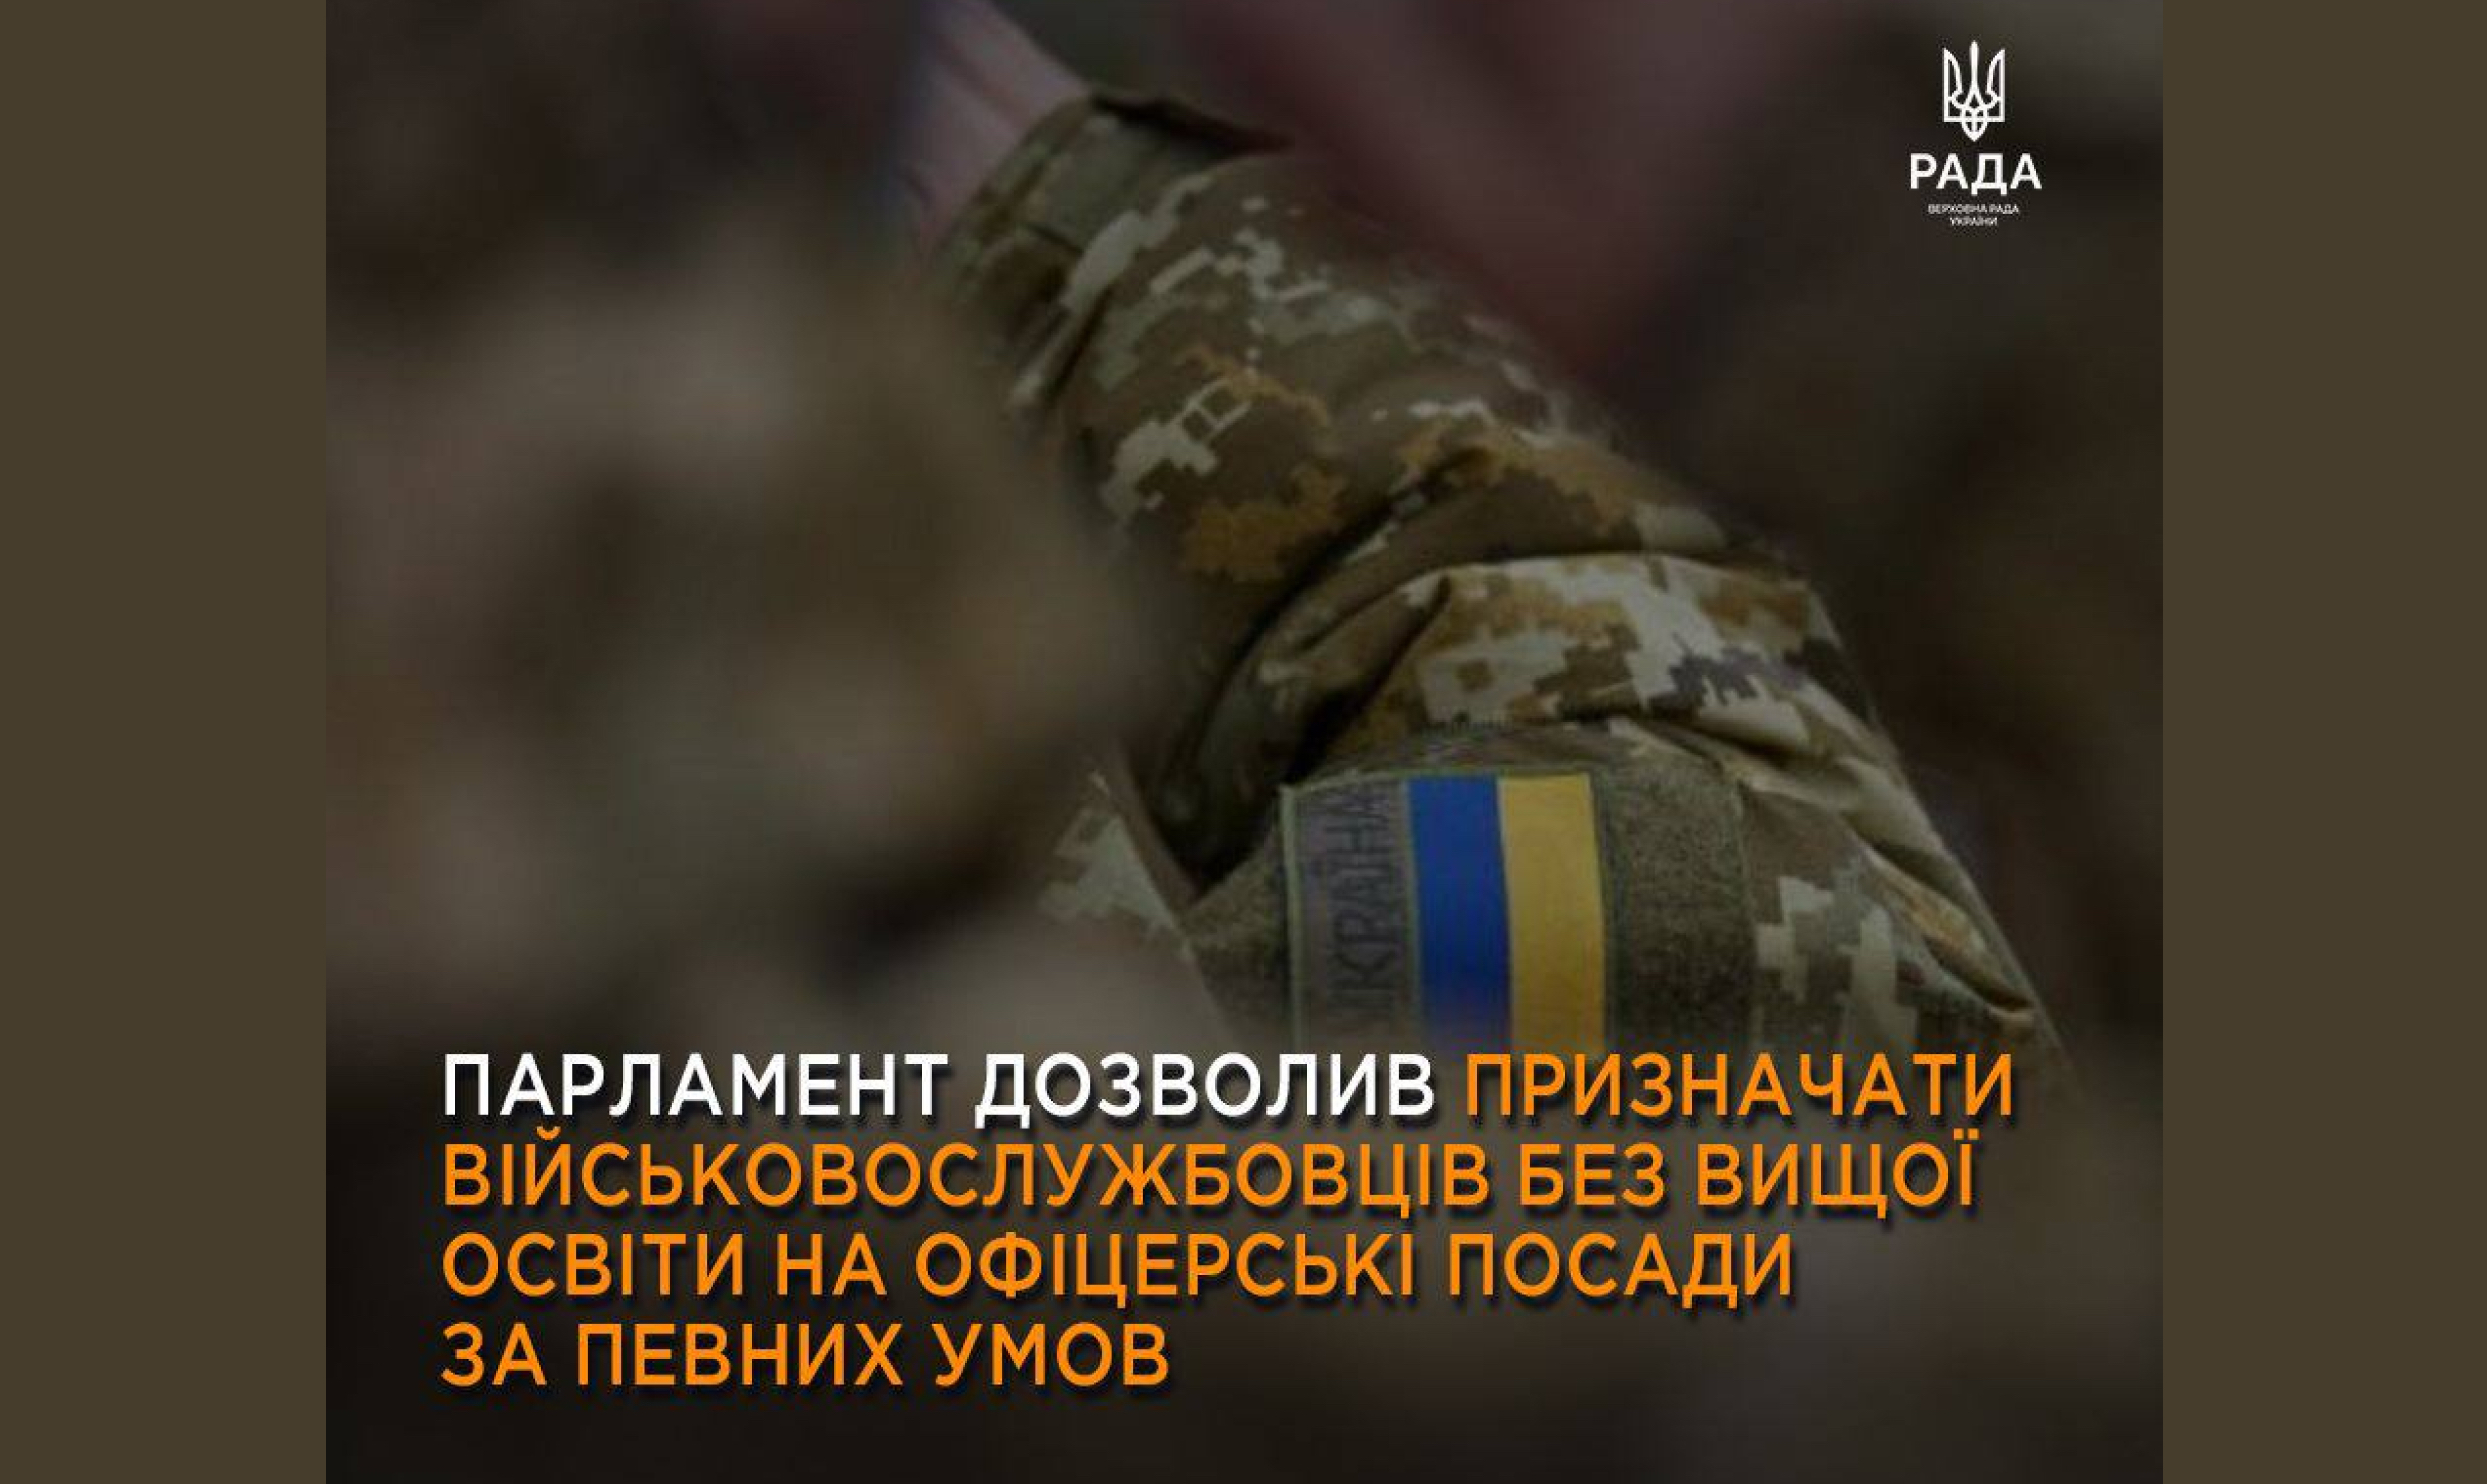 Верховна Рада України прийняла Закон щодо комплектування Збройних Сил України посадовими особами офіцерського складу на особливий період